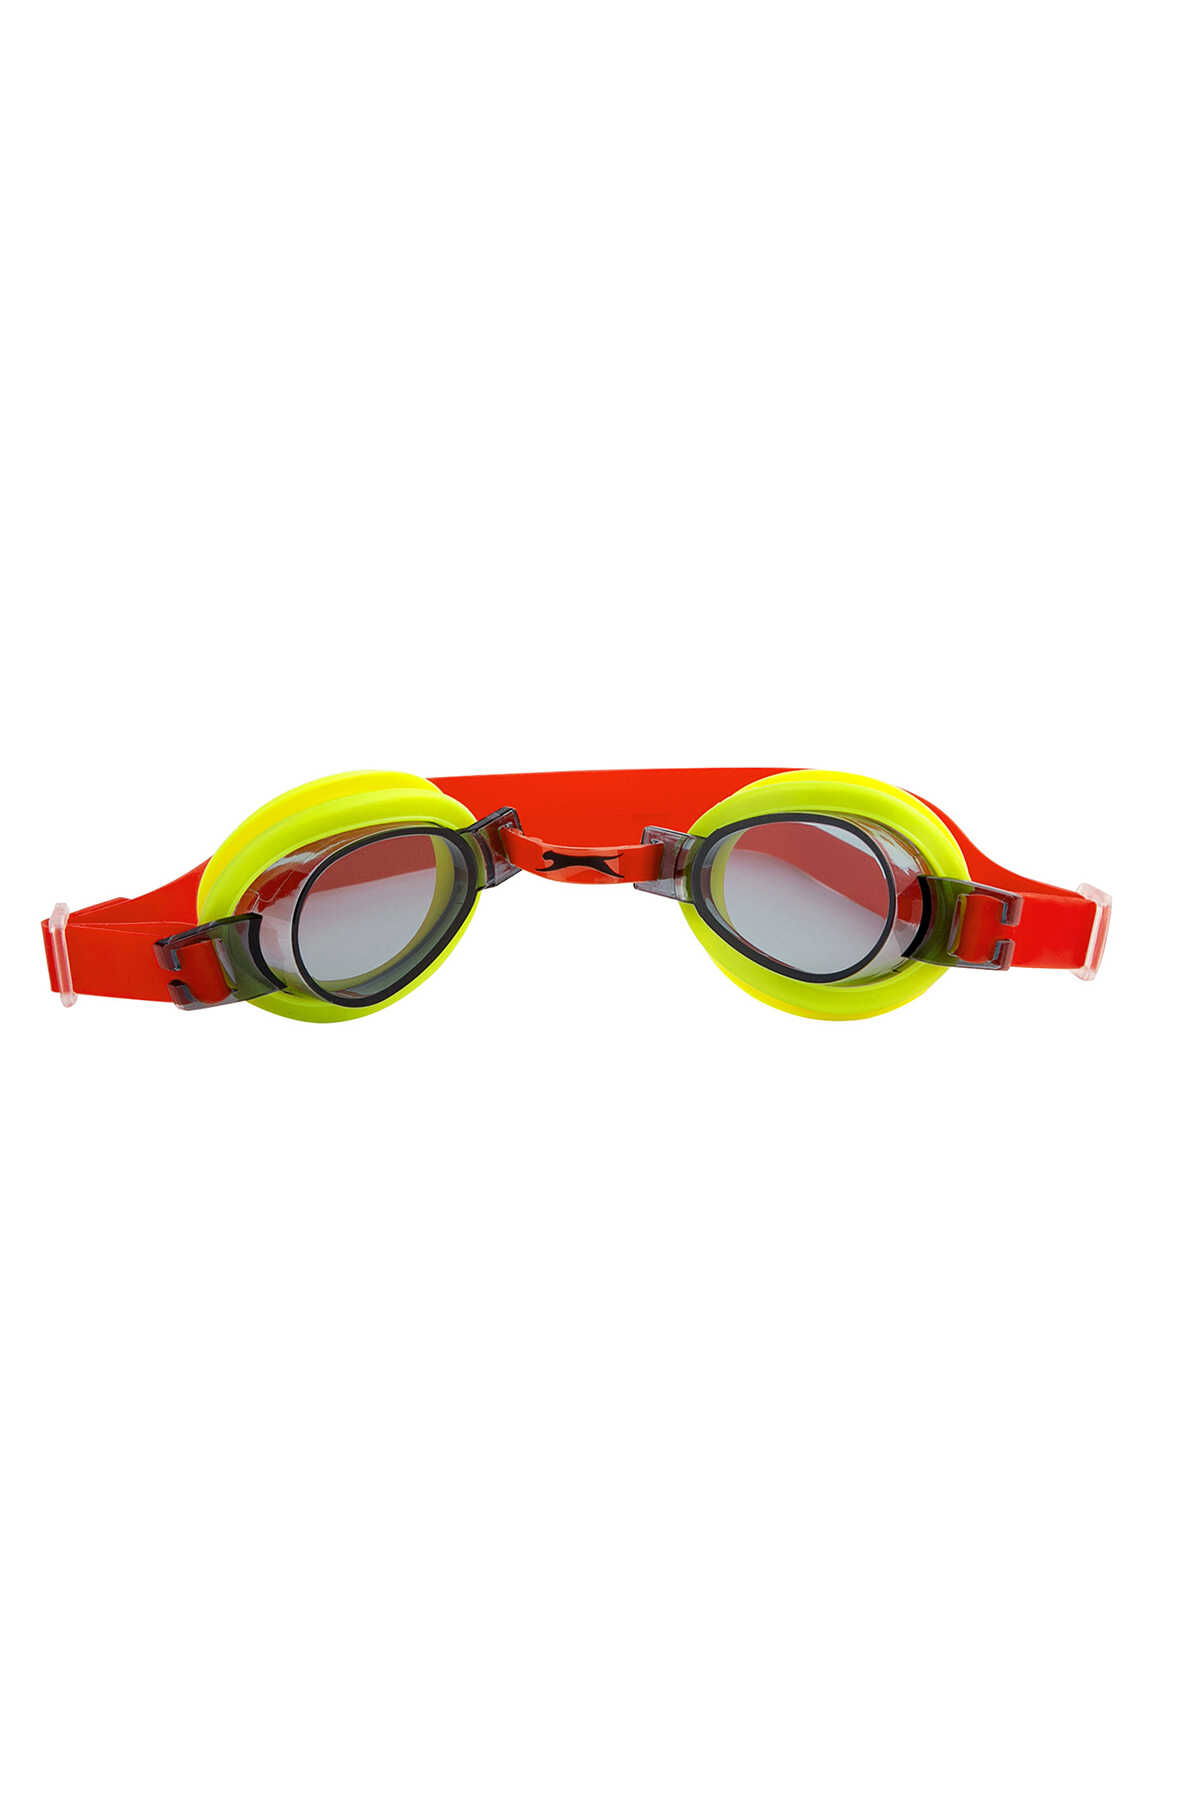 Slazenger - Slazenger Wave 2546 Unisex Çocuk Yüzücü Gözlüğü Sarı